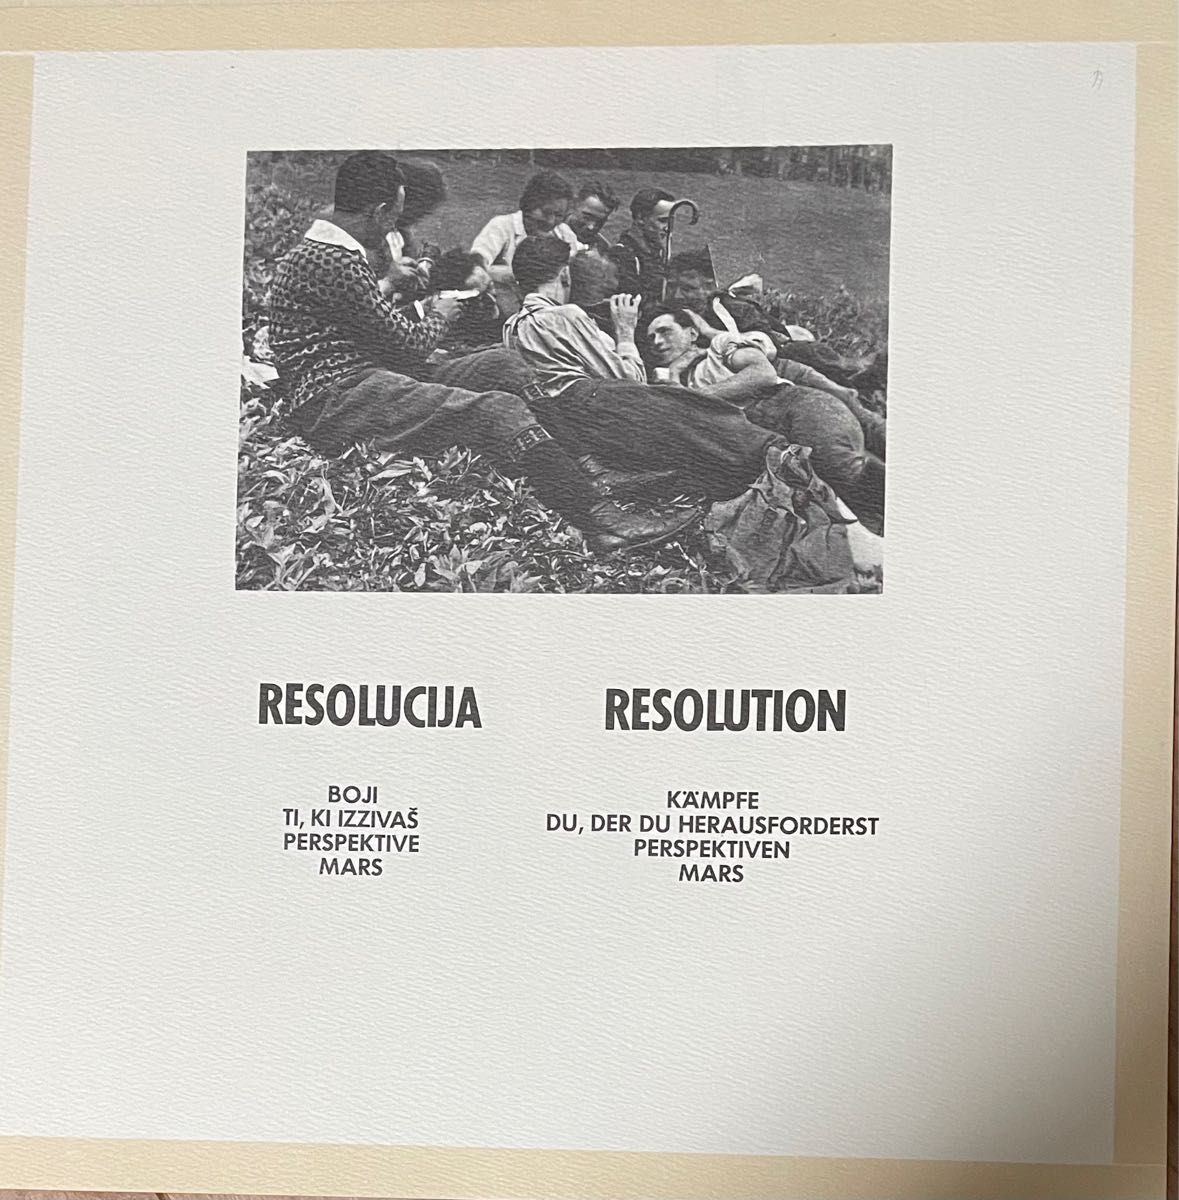 【Laibach “Rekapitulacija 1980-84”】2LPs ２枚組レコードボックス